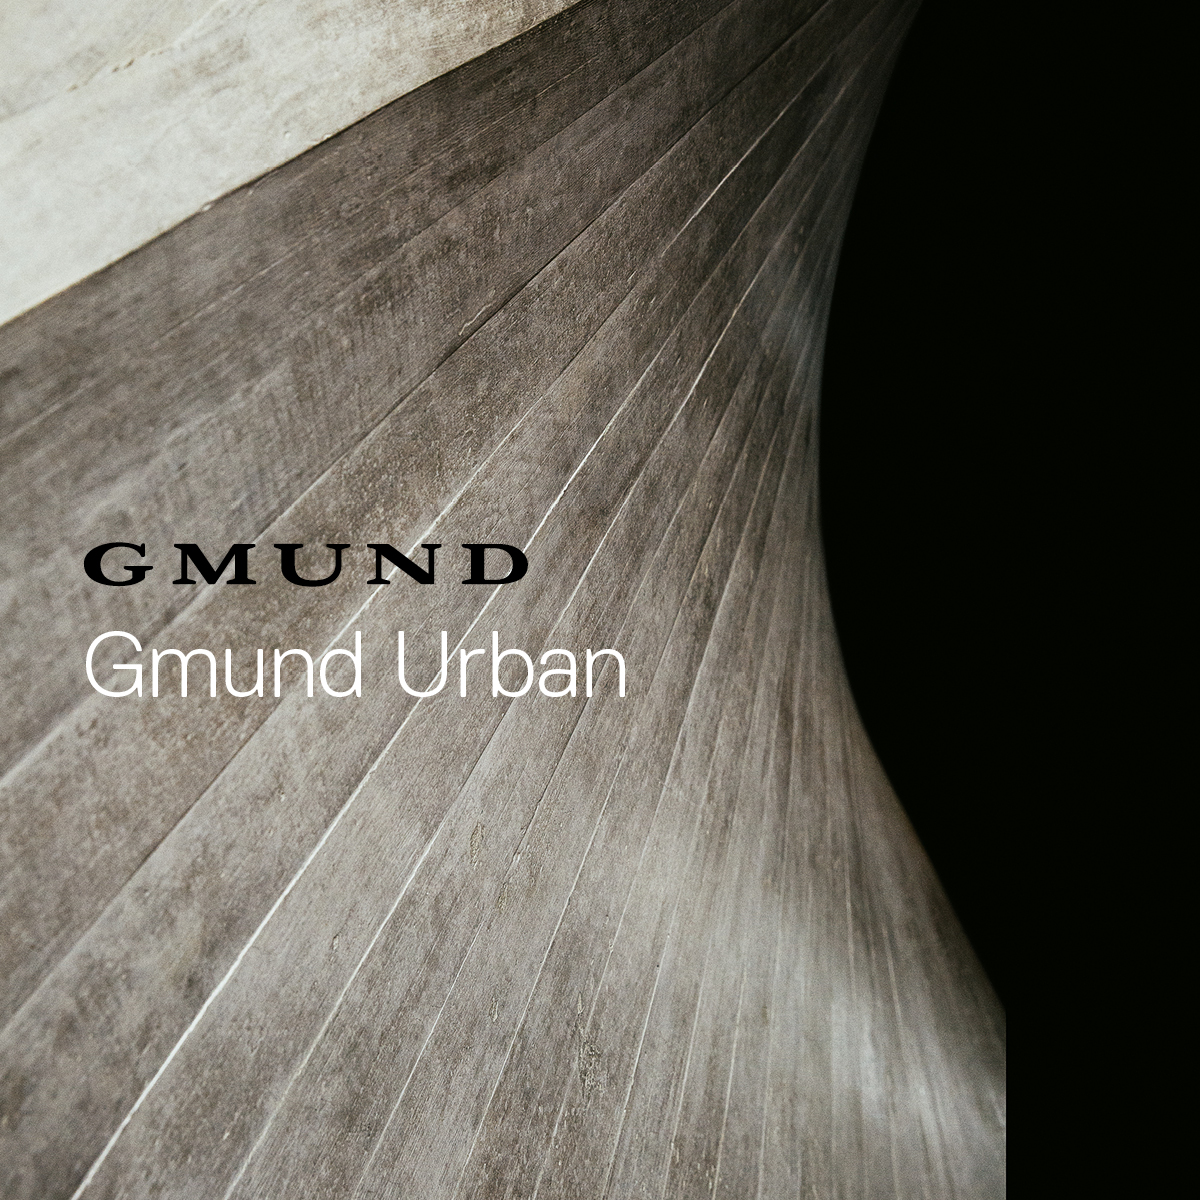 Gmund Urban - Compendium Gmund Urban